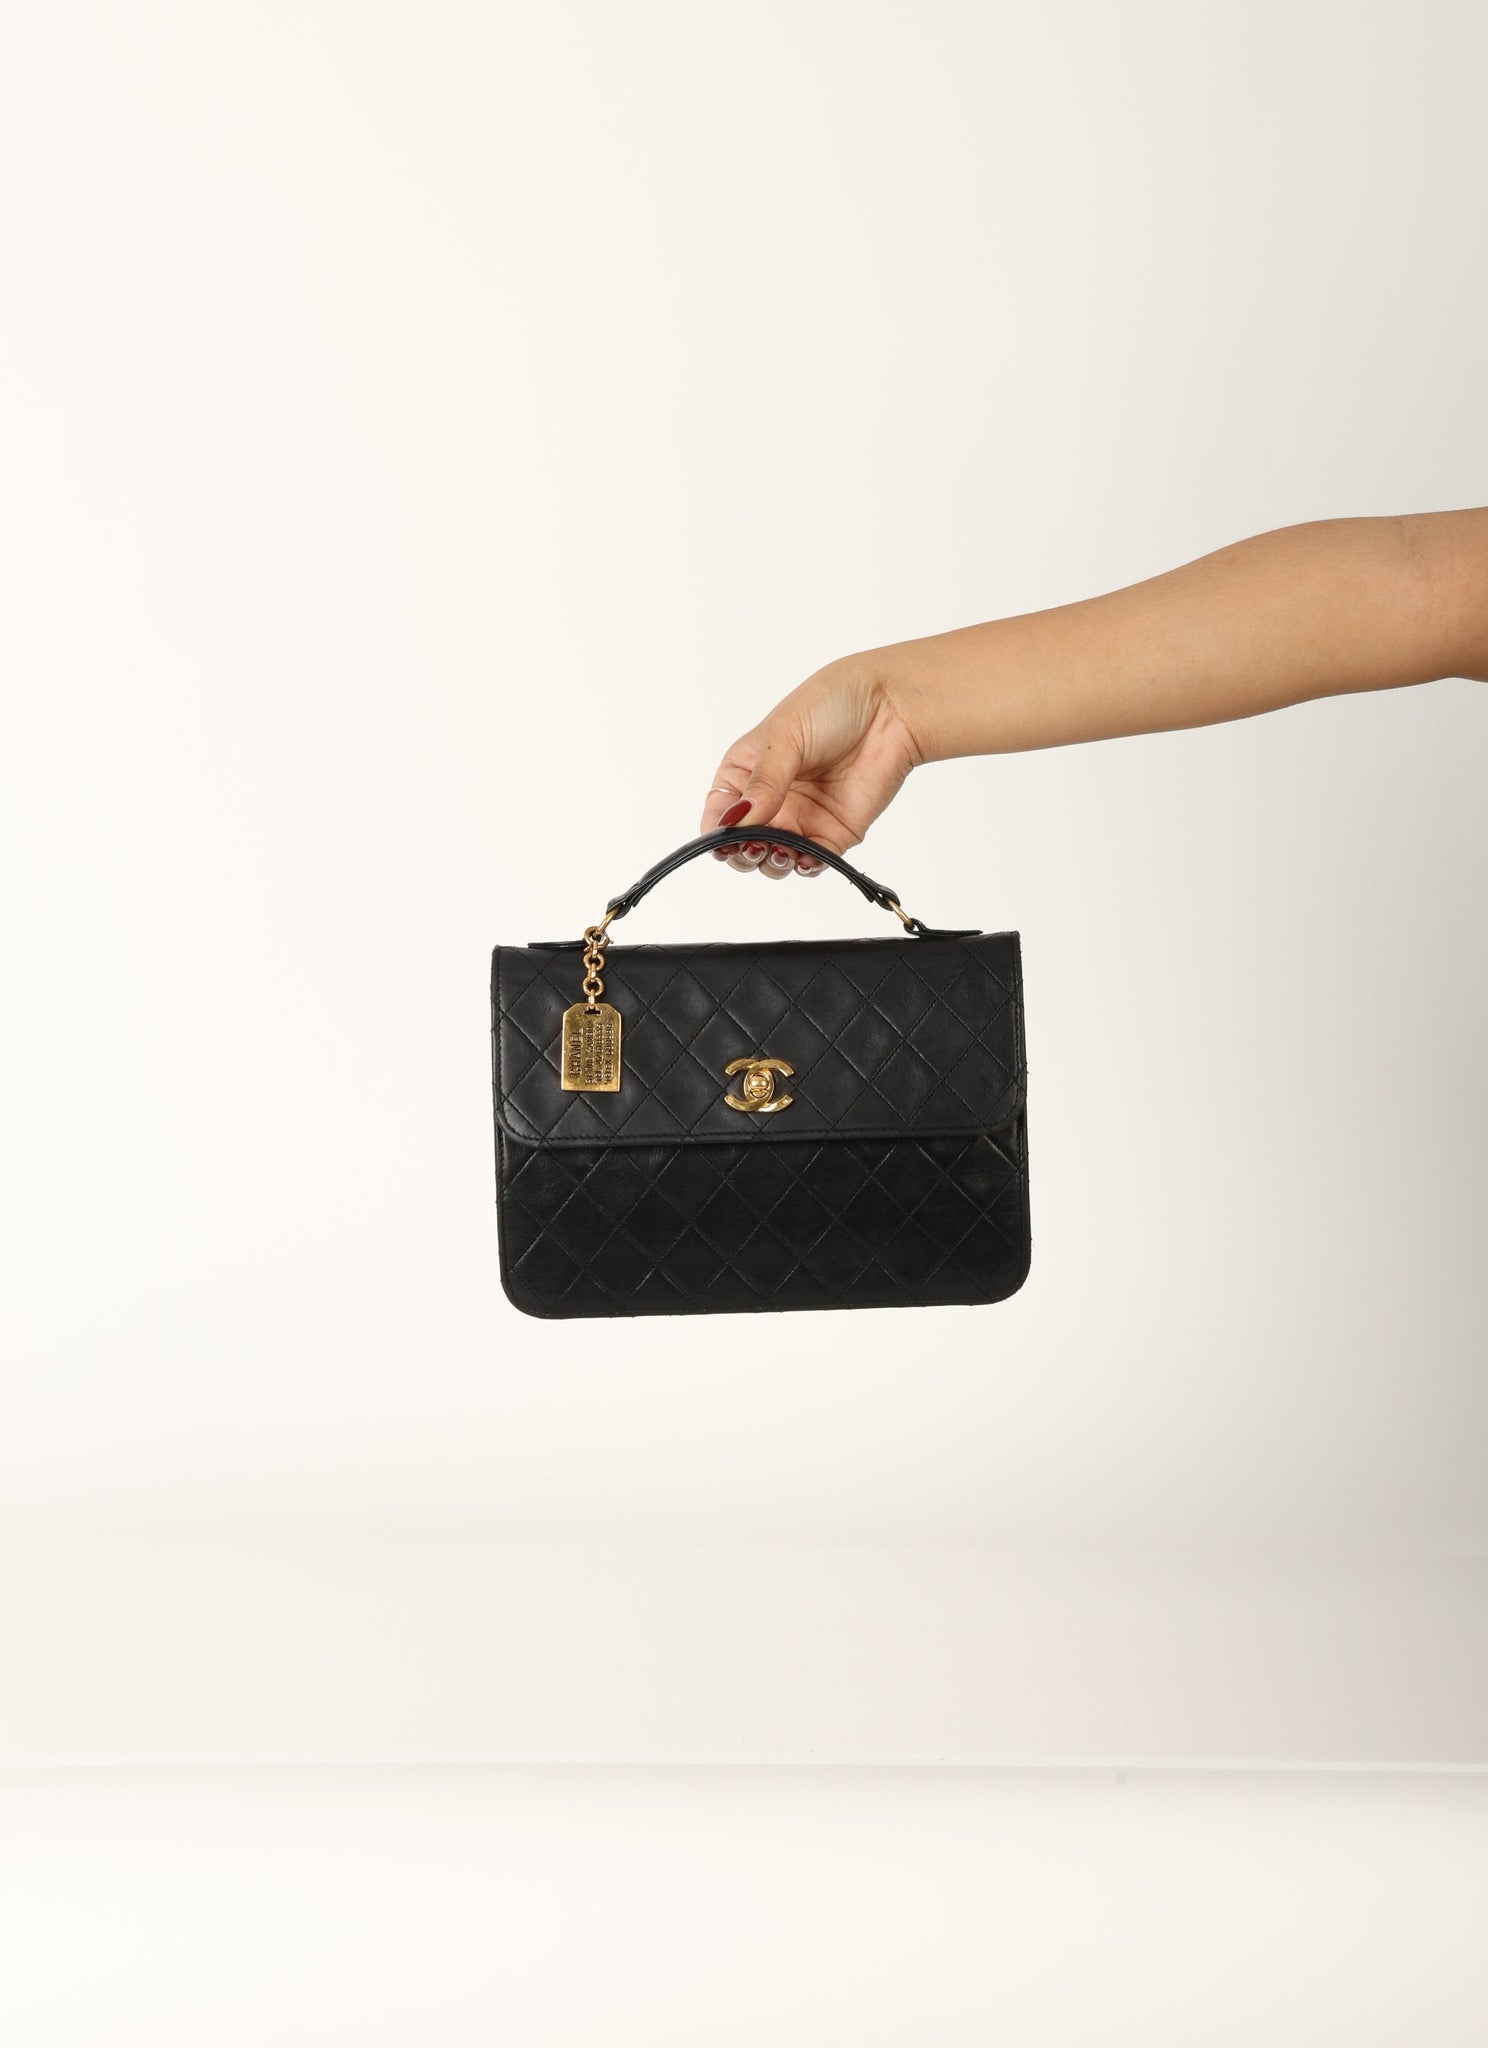 Ultra-Rare Chanel 1986 Lambskin Mini Turnlock Briefcase